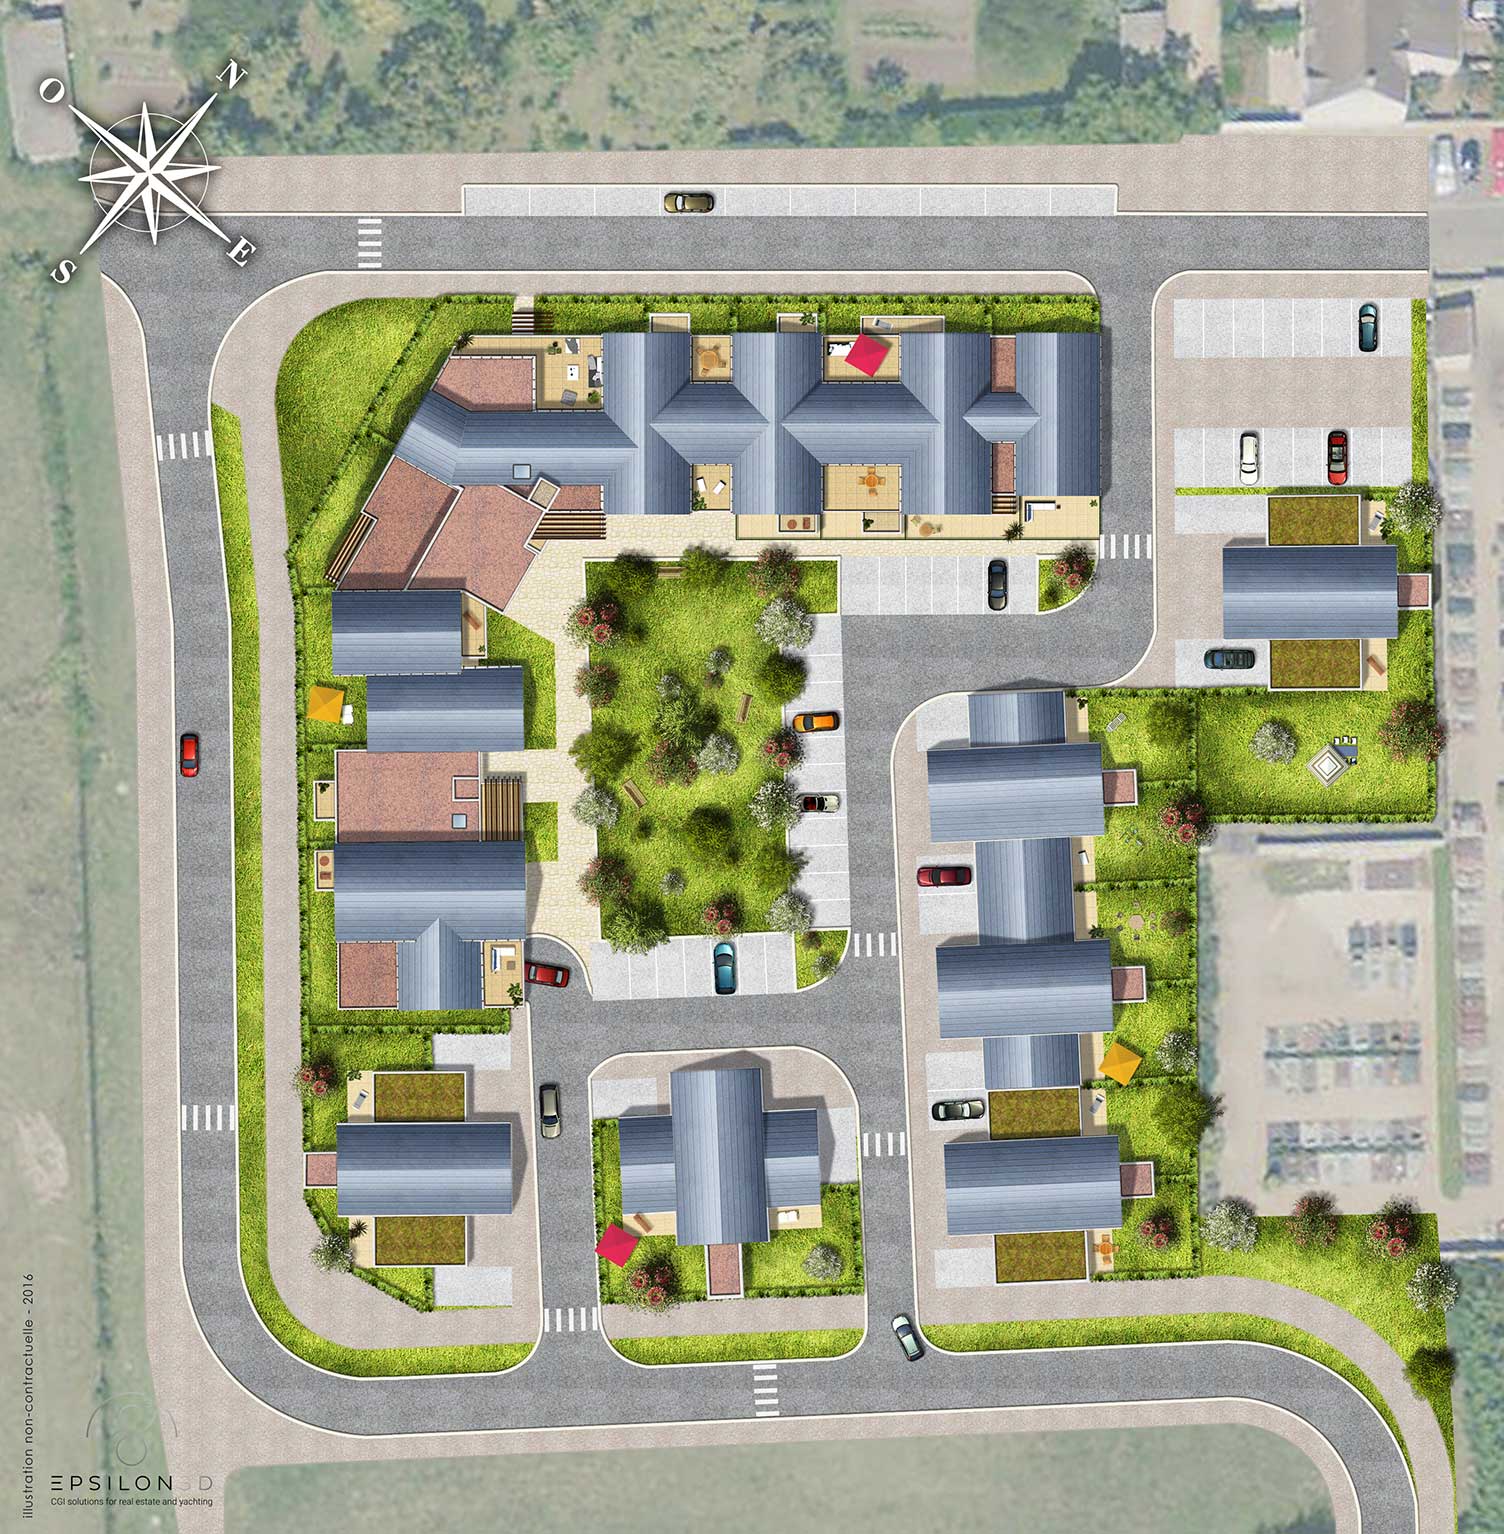 Plan du quartier de la Guignace (Résidence senior + pavillons) ©Epsilon 3D